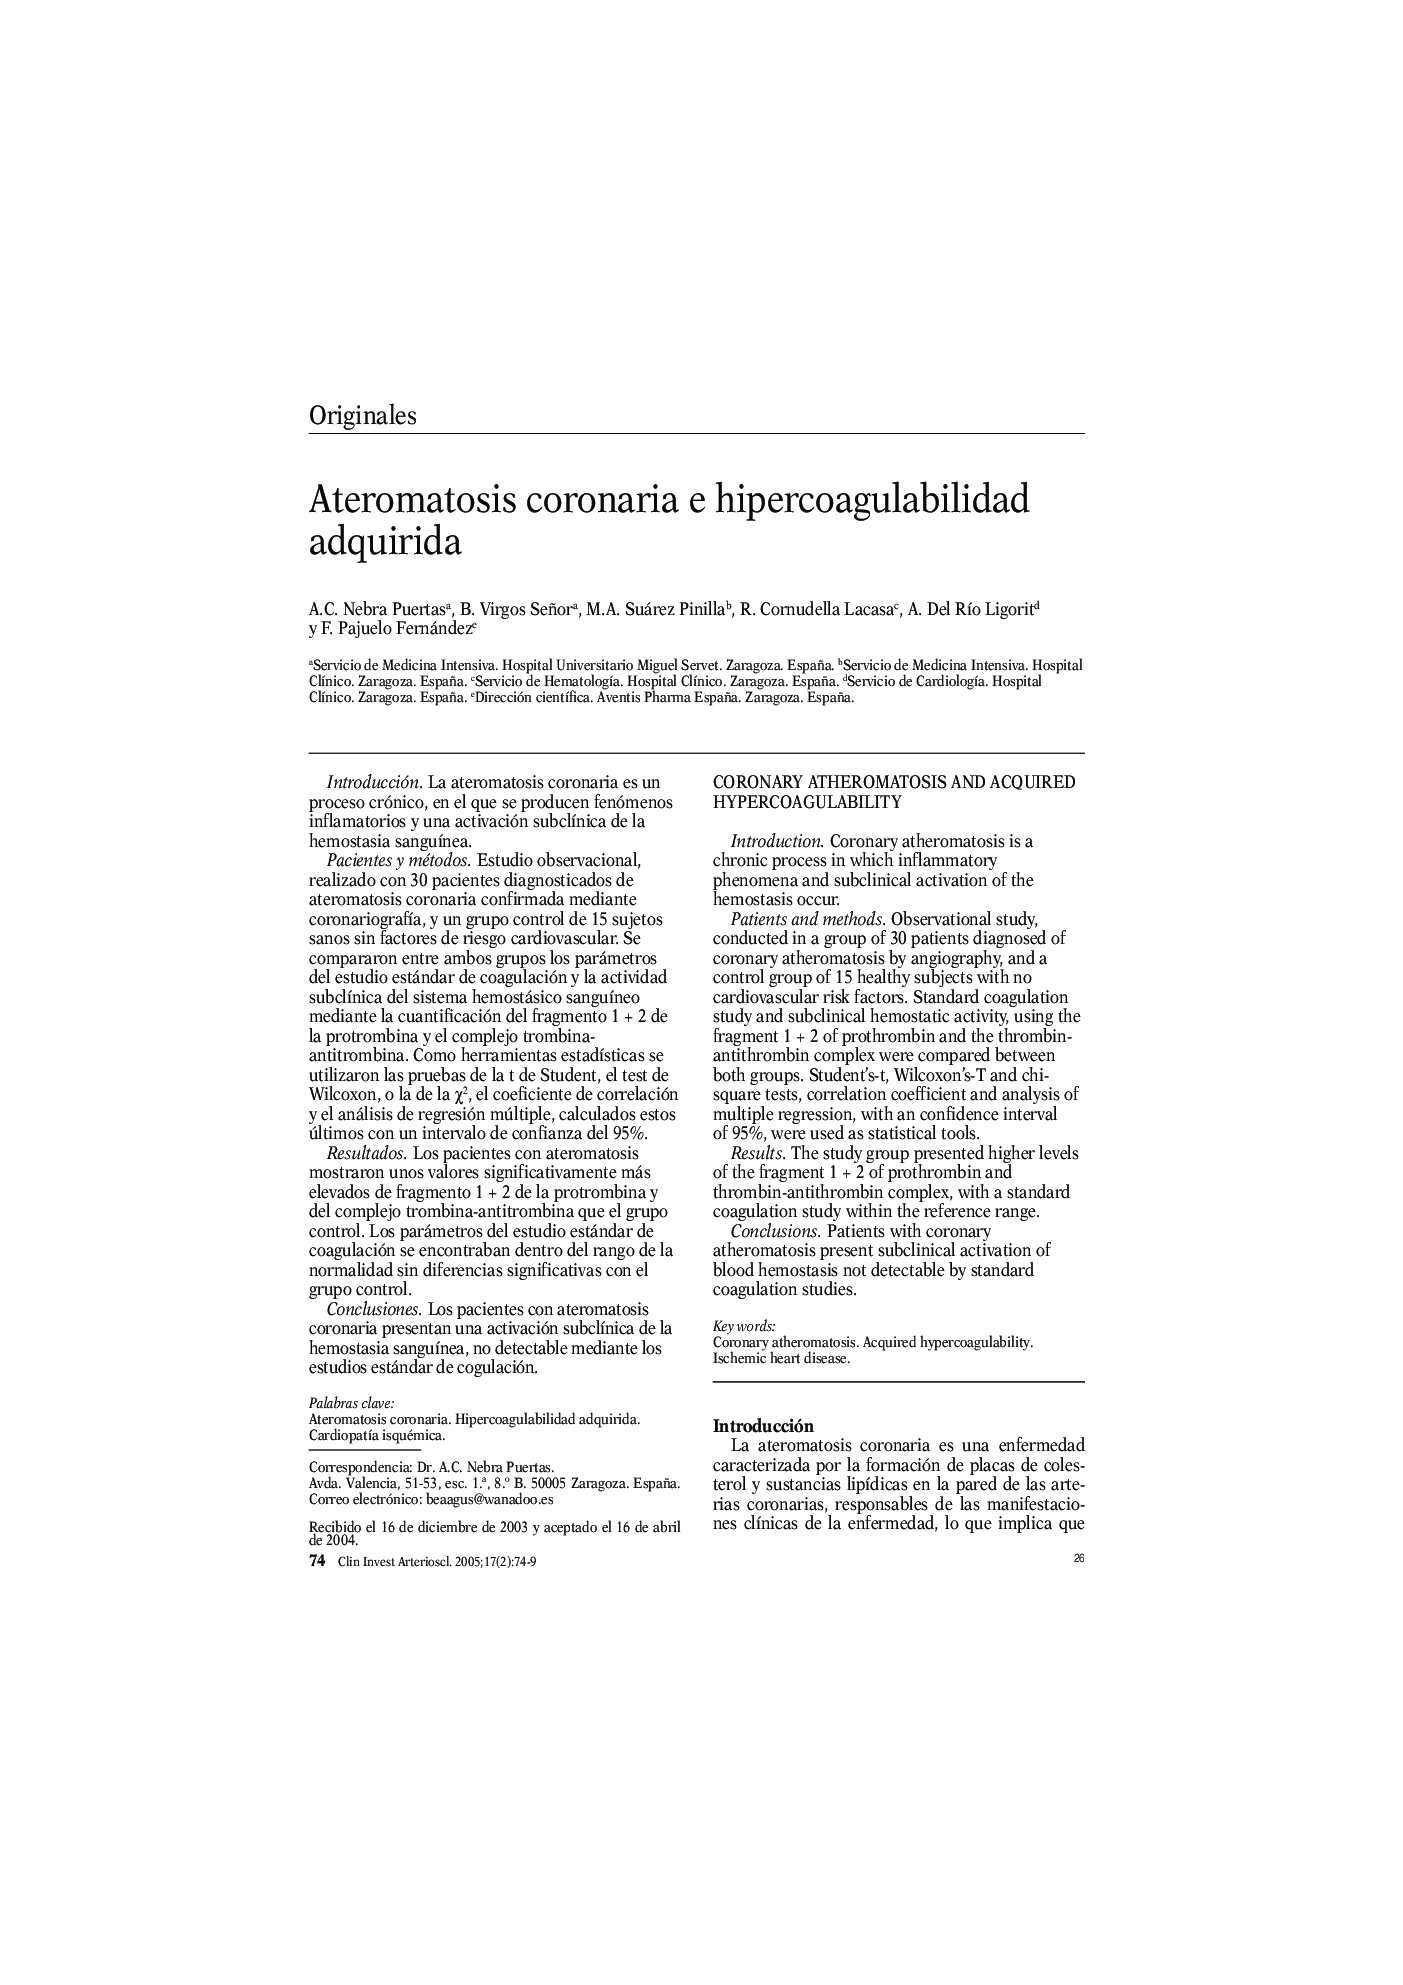 Ateromatosis coronaria e hipercoagulabilidad adquirida